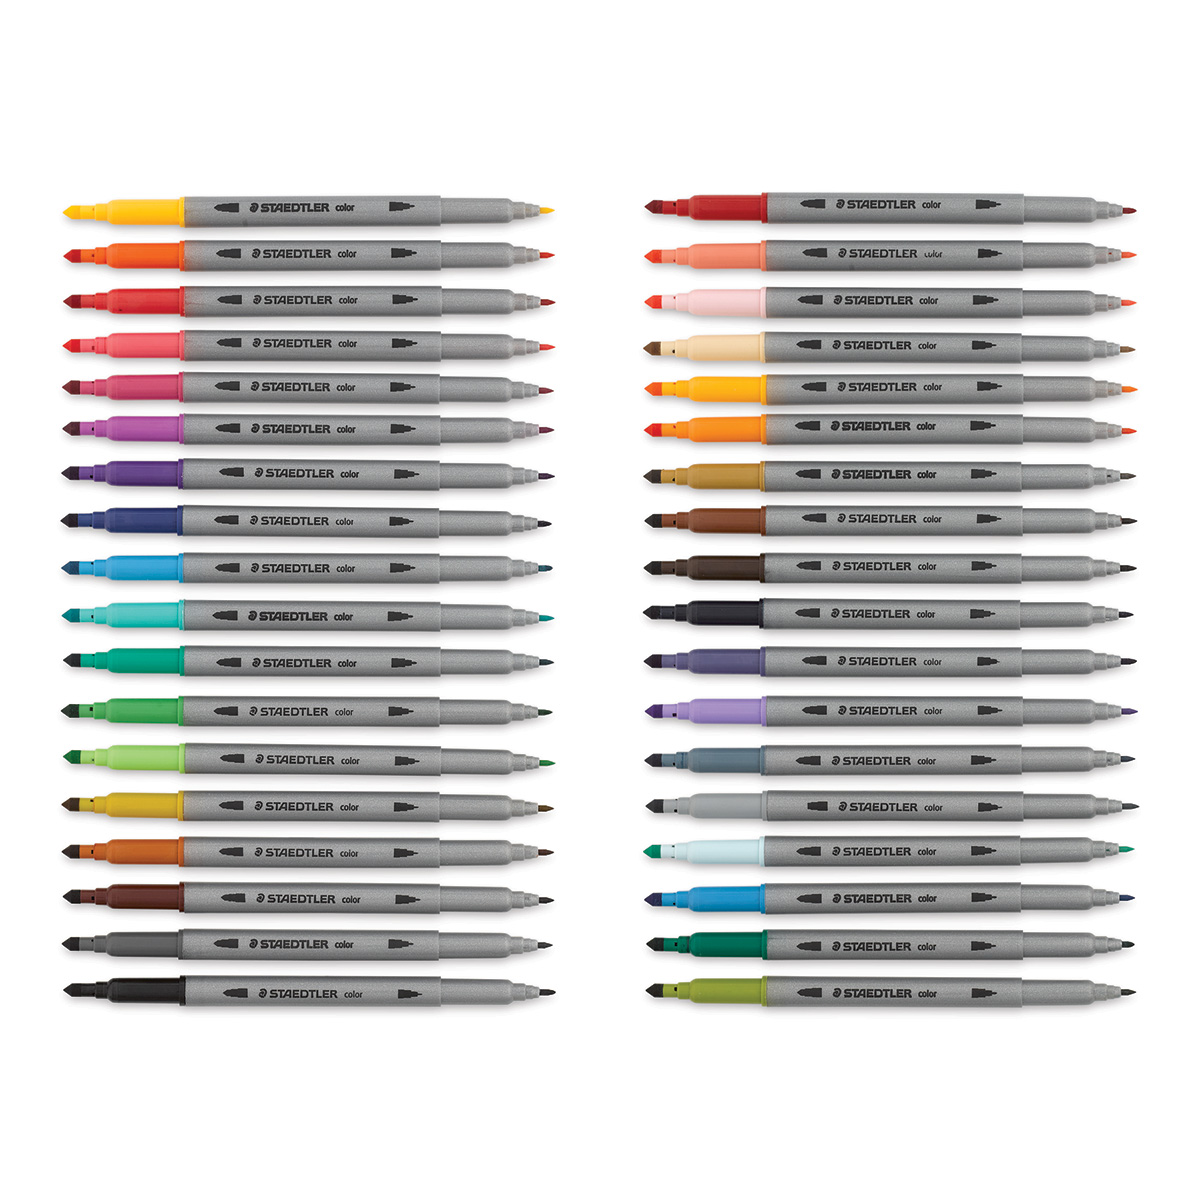 Staedtler Double-Ended Fiber-Tip Pens - Set of 120